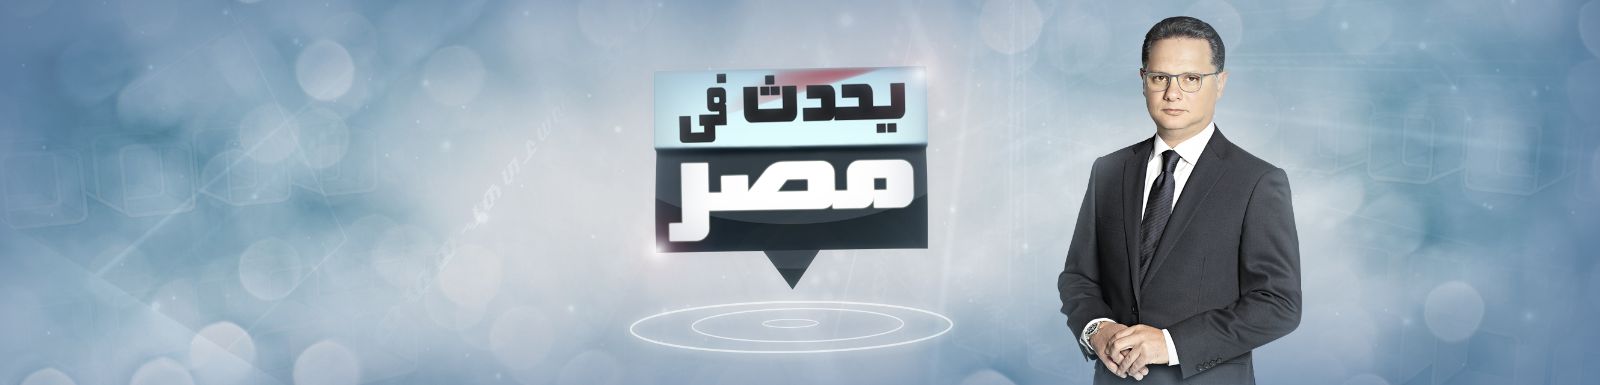 مشاهدة برنامج يحدث في مصر حلقة هيفاء وهبي اليوم الاحد 29-3-2015